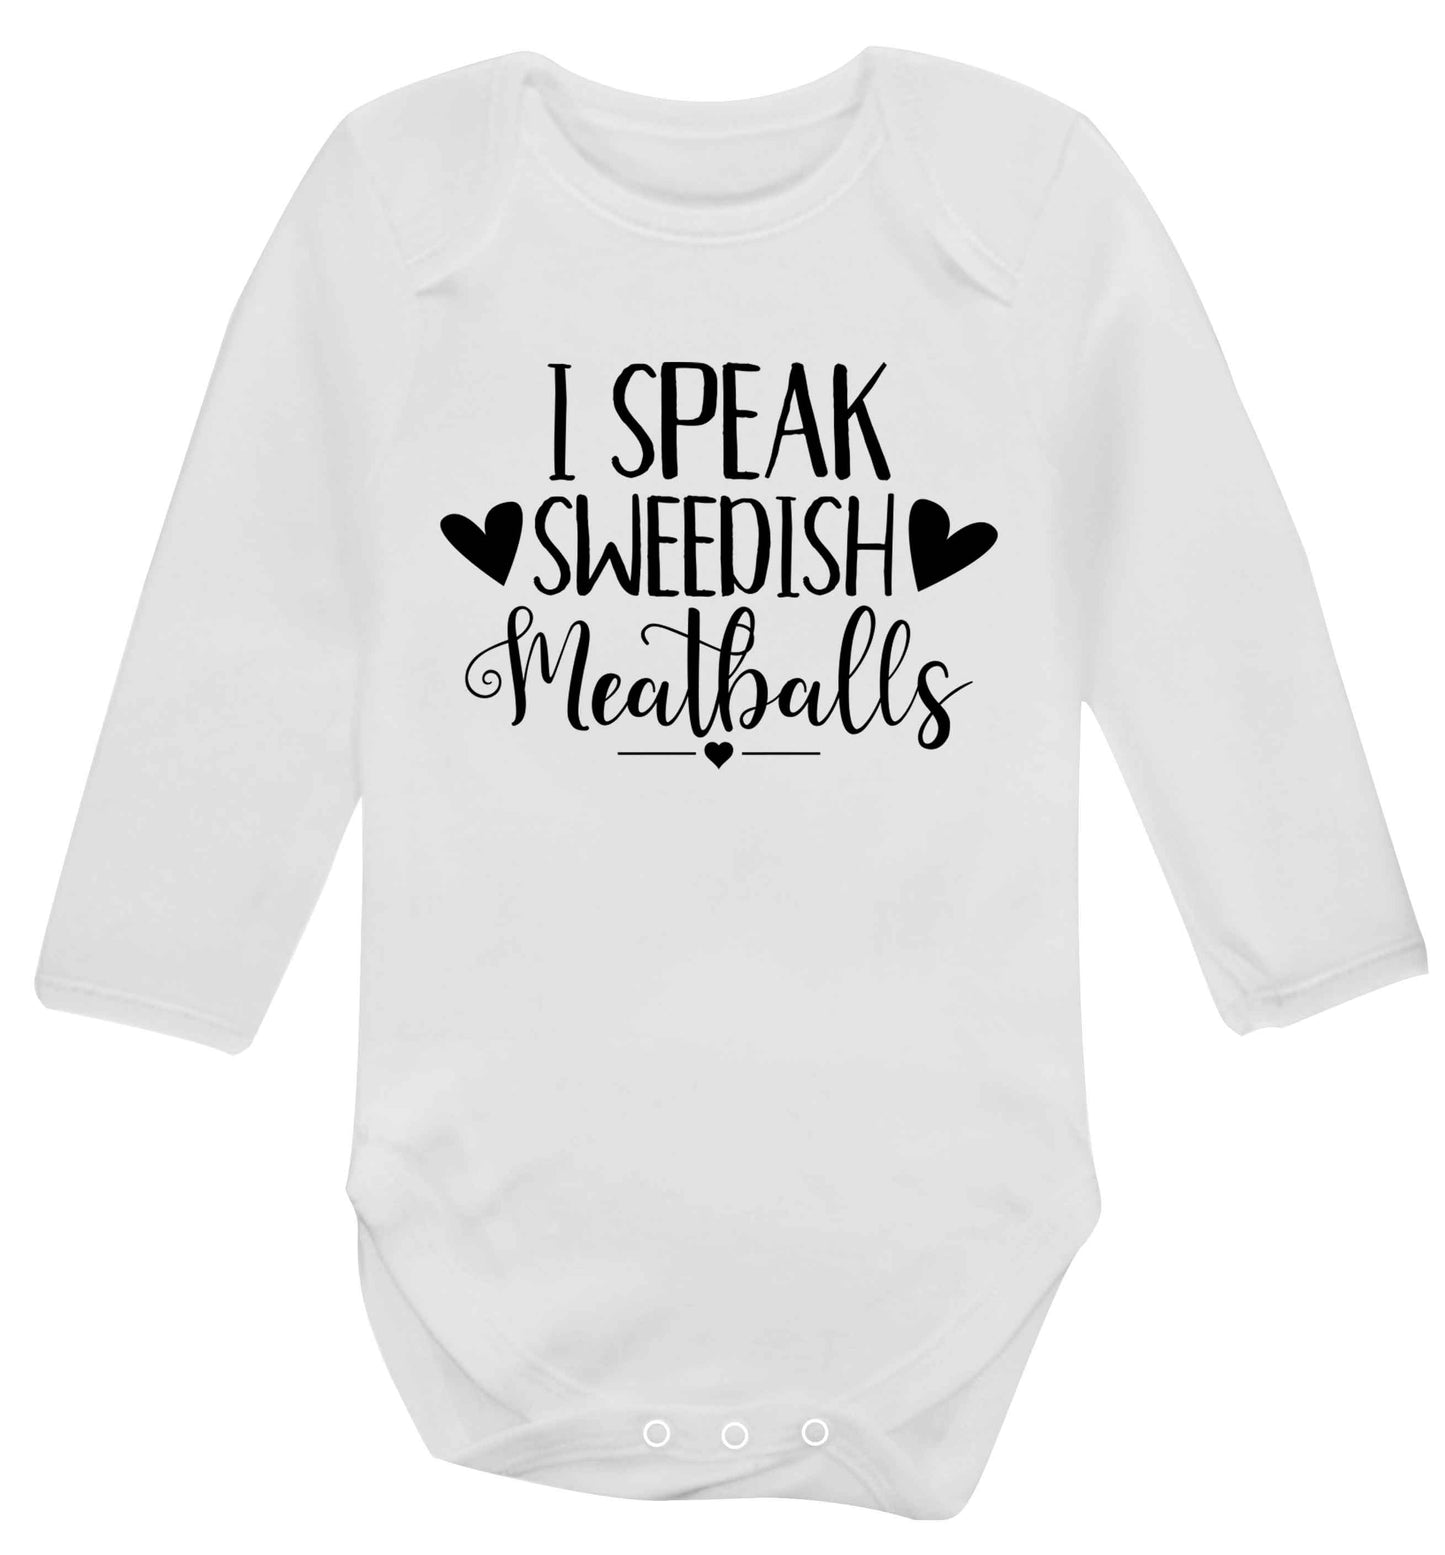 I speak sweedish...meatballs Baby Vest long sleeved white 6-12 months